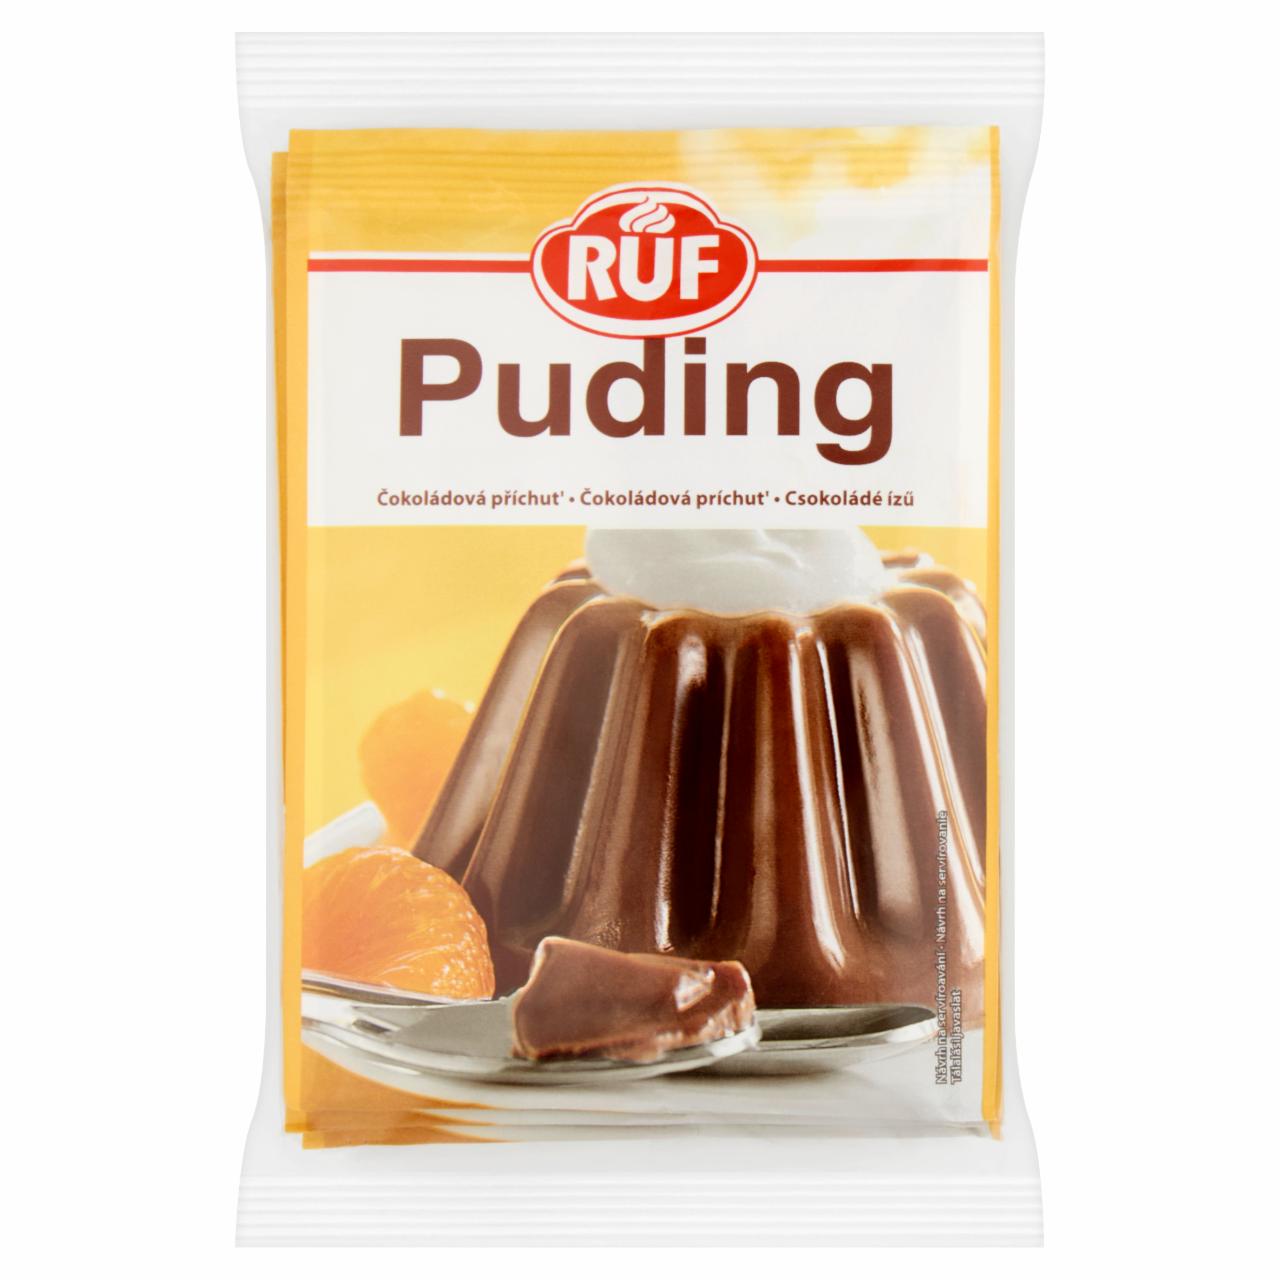 Képek - RUF csokoládé ízű pudingpor 3 x 41 g